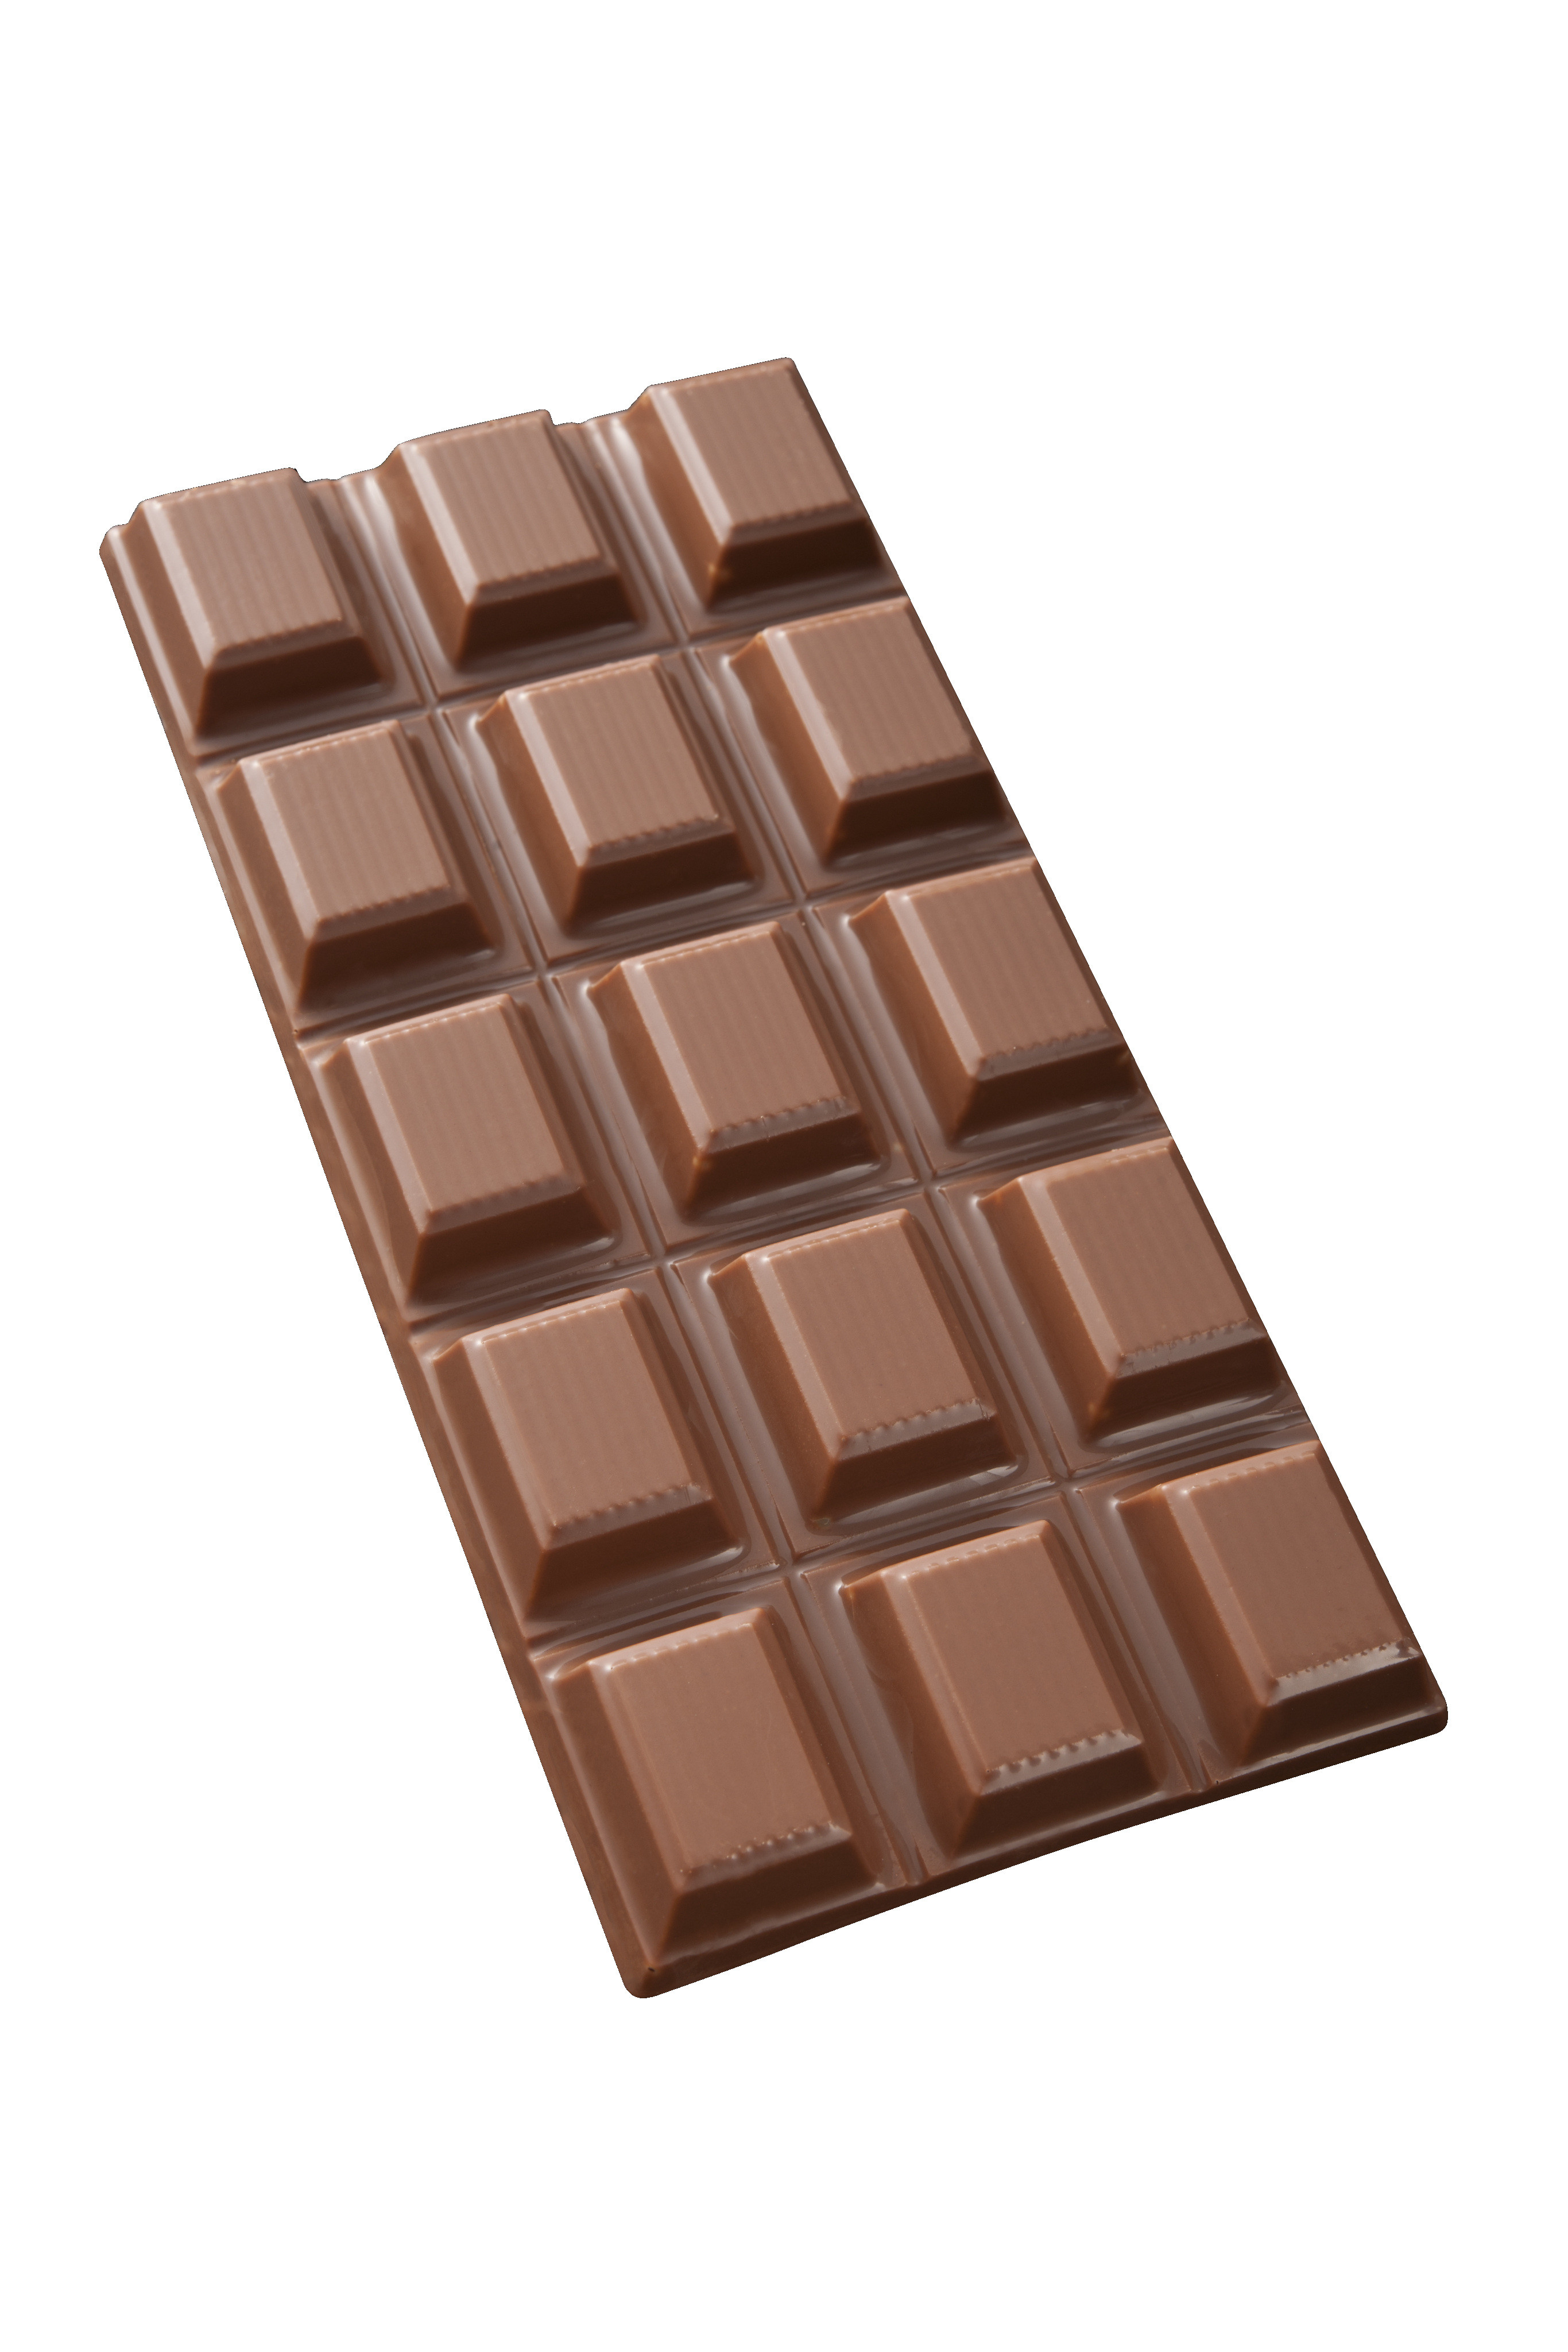 image-tablette-de-chocolat